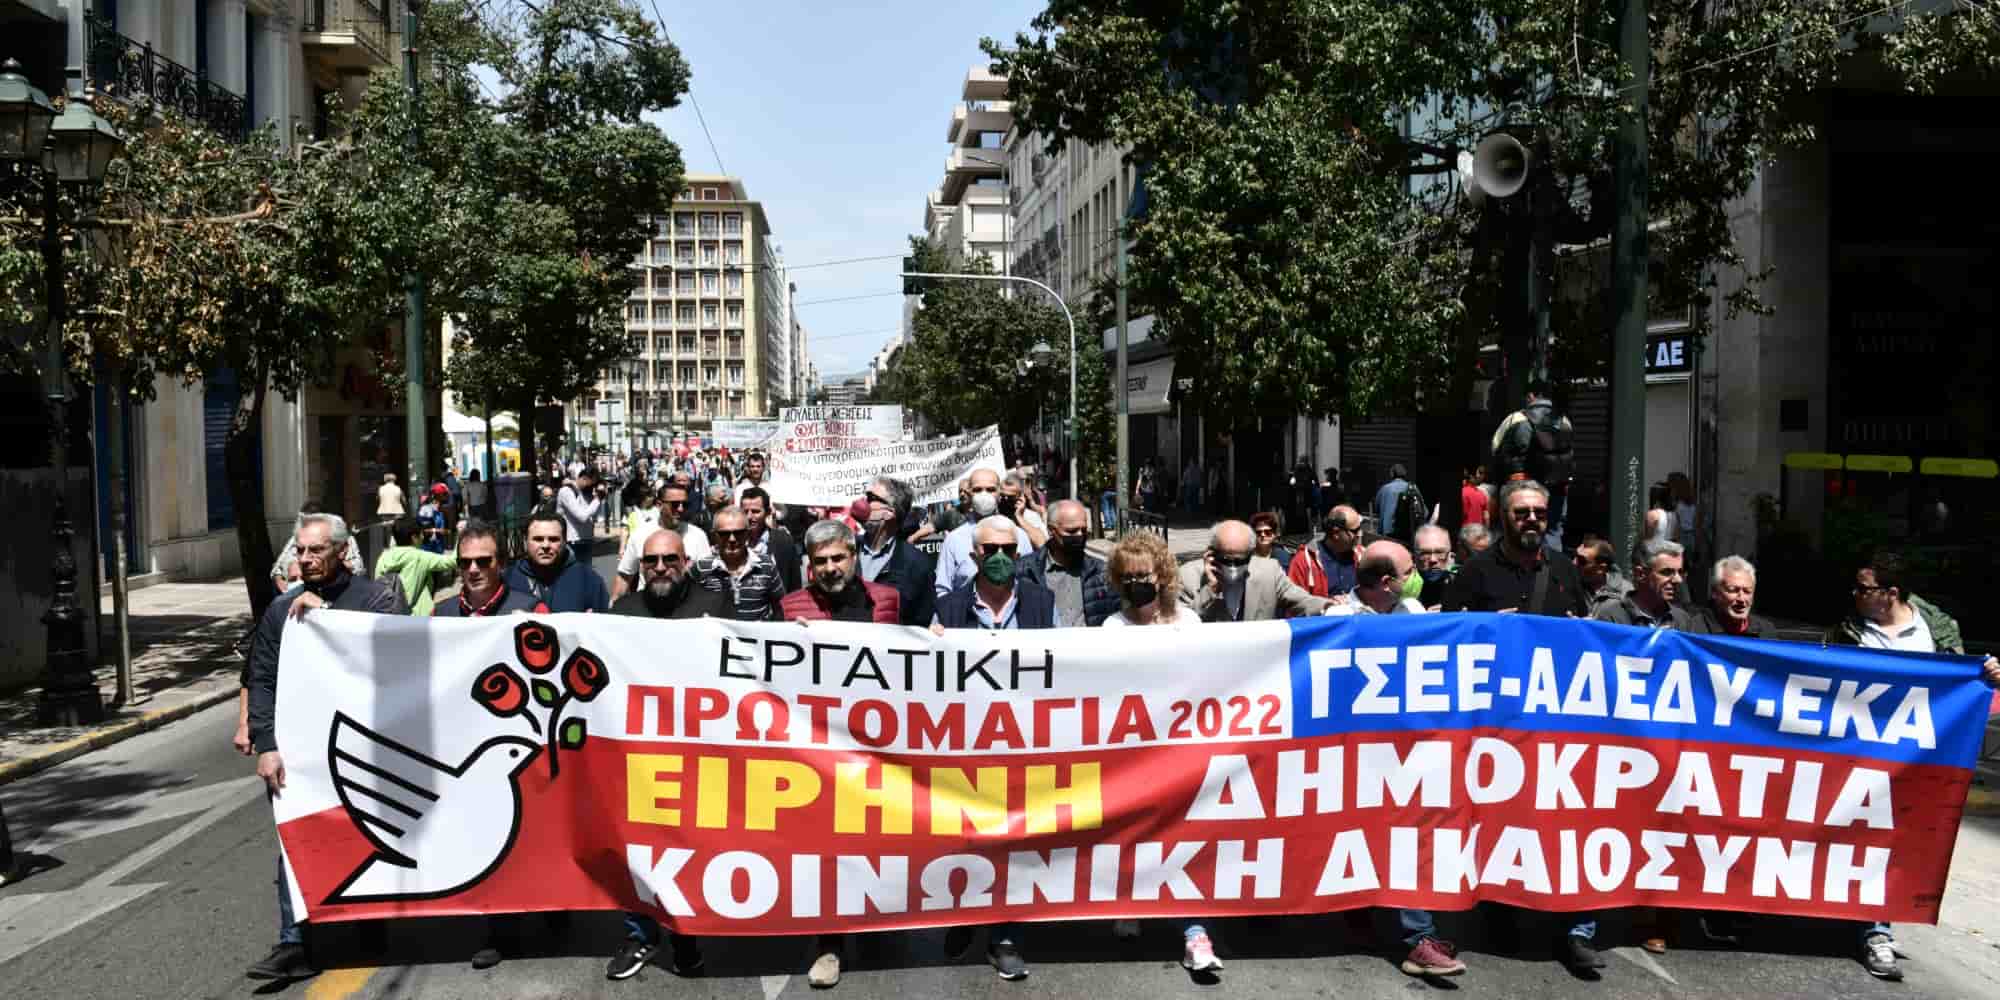 Συγκέντρωση για την Εργατική Πρωτομαγιά στην Αθήνα